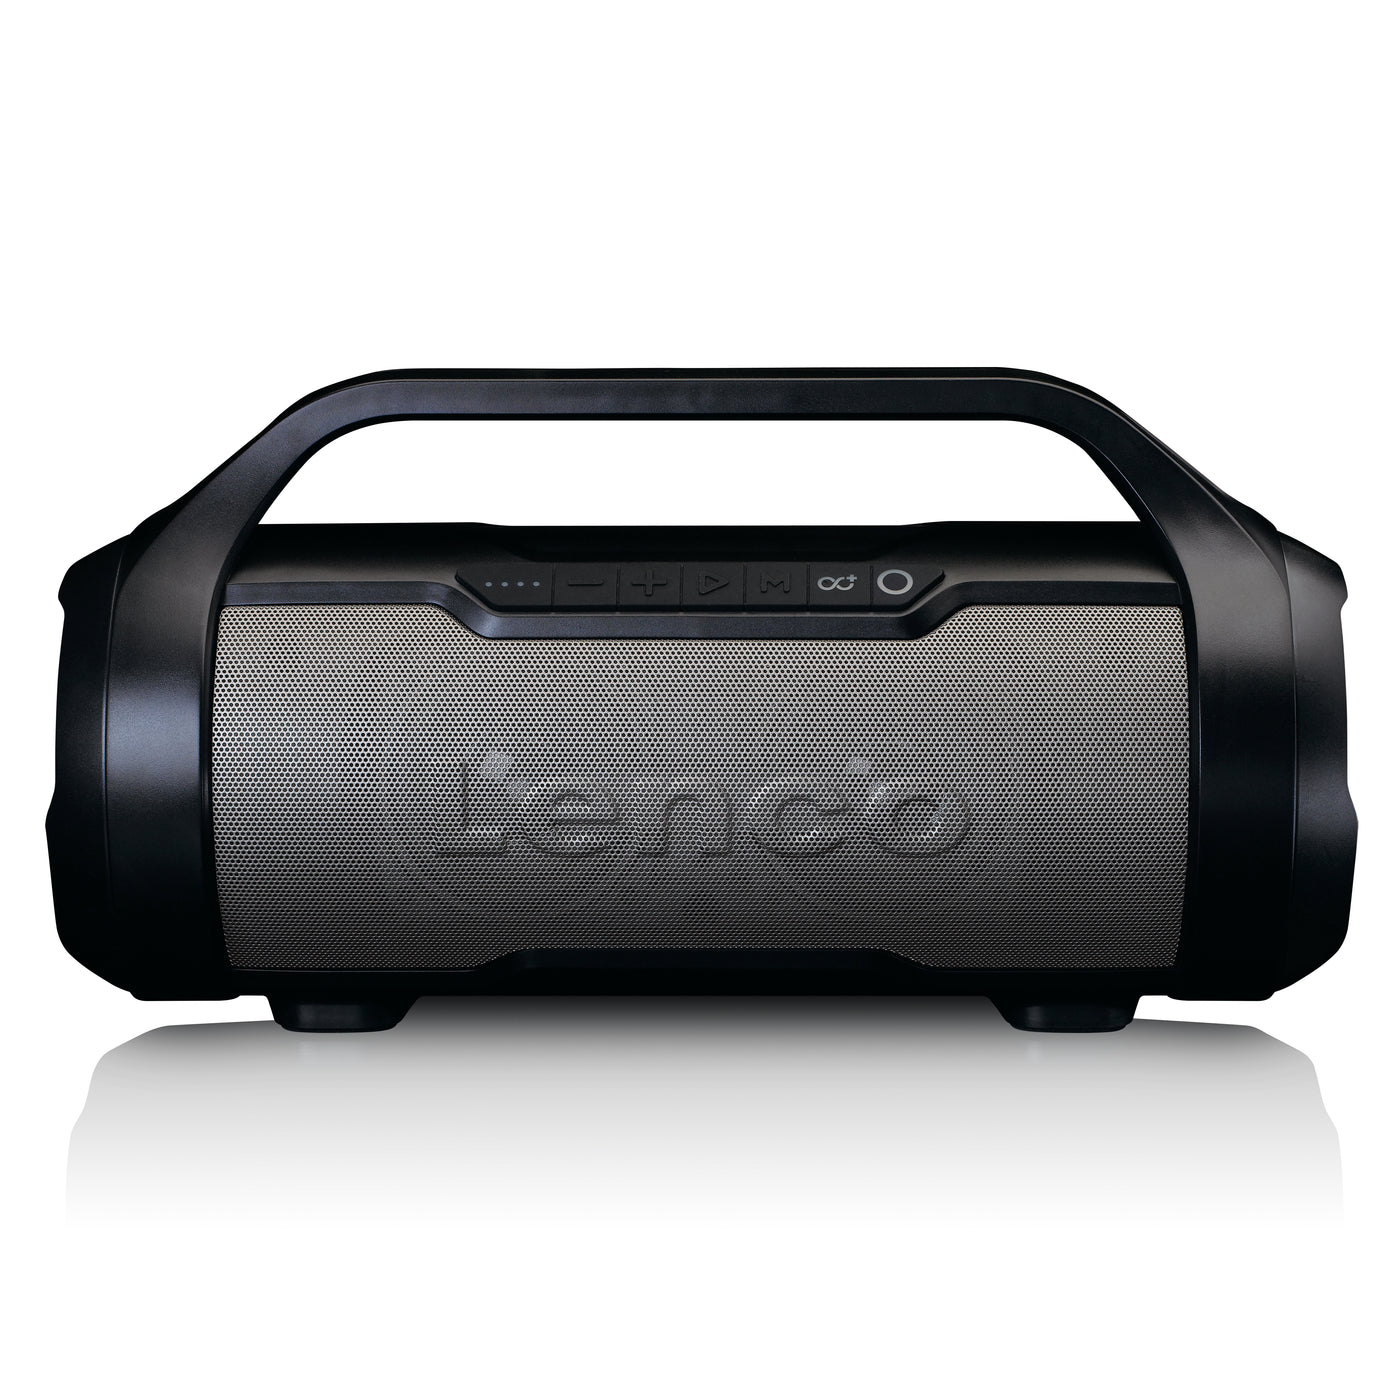 Lenco SPR-070BK - Enceinte Bluetooth® étanche avec radio FM, lecteur USB/SD et effets lumineux - Noir